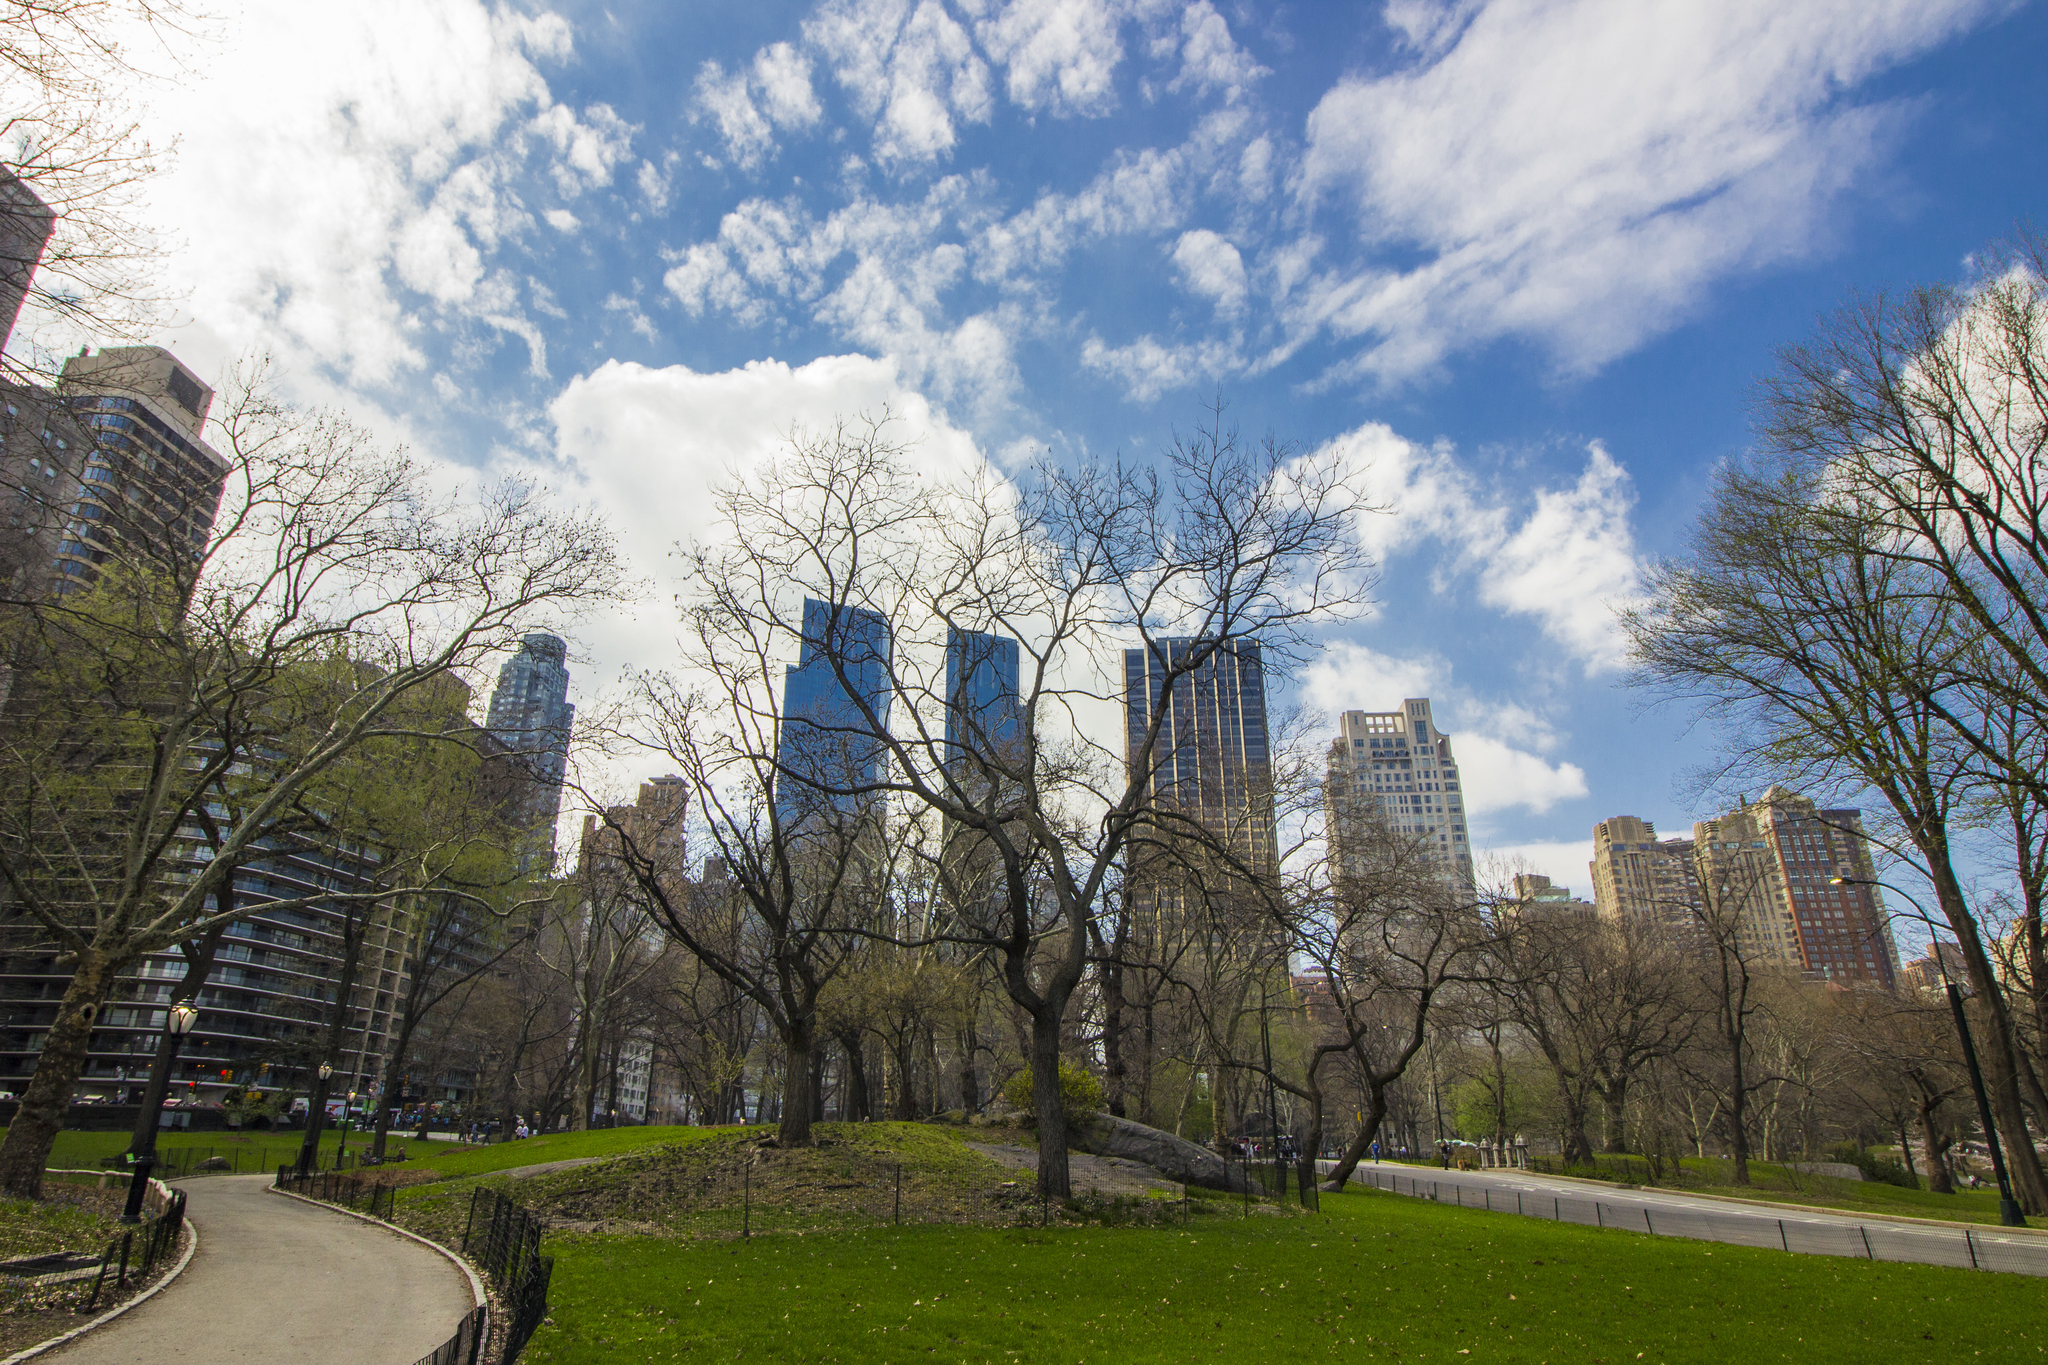 Les buildings de Central Park à New York